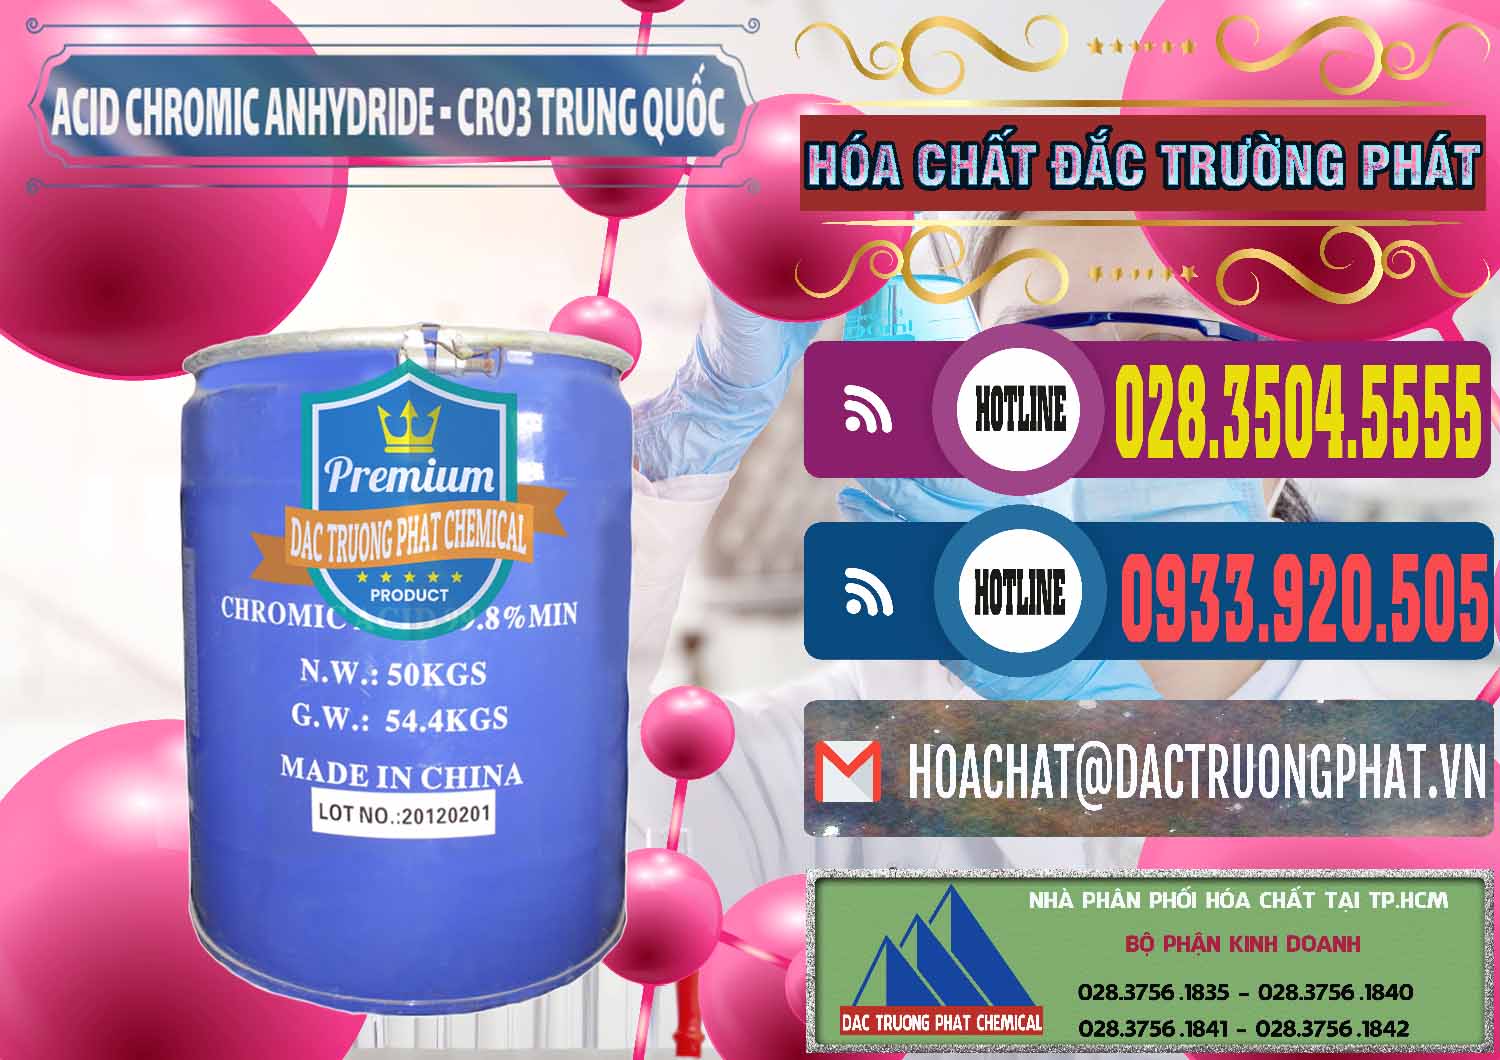 Cty nhập khẩu - bán Acid Chromic Anhydride - Cromic CRO3 Trung Quốc China - 0007 - Cty cung cấp & phân phối hóa chất tại TP.HCM - muabanhoachat.com.vn